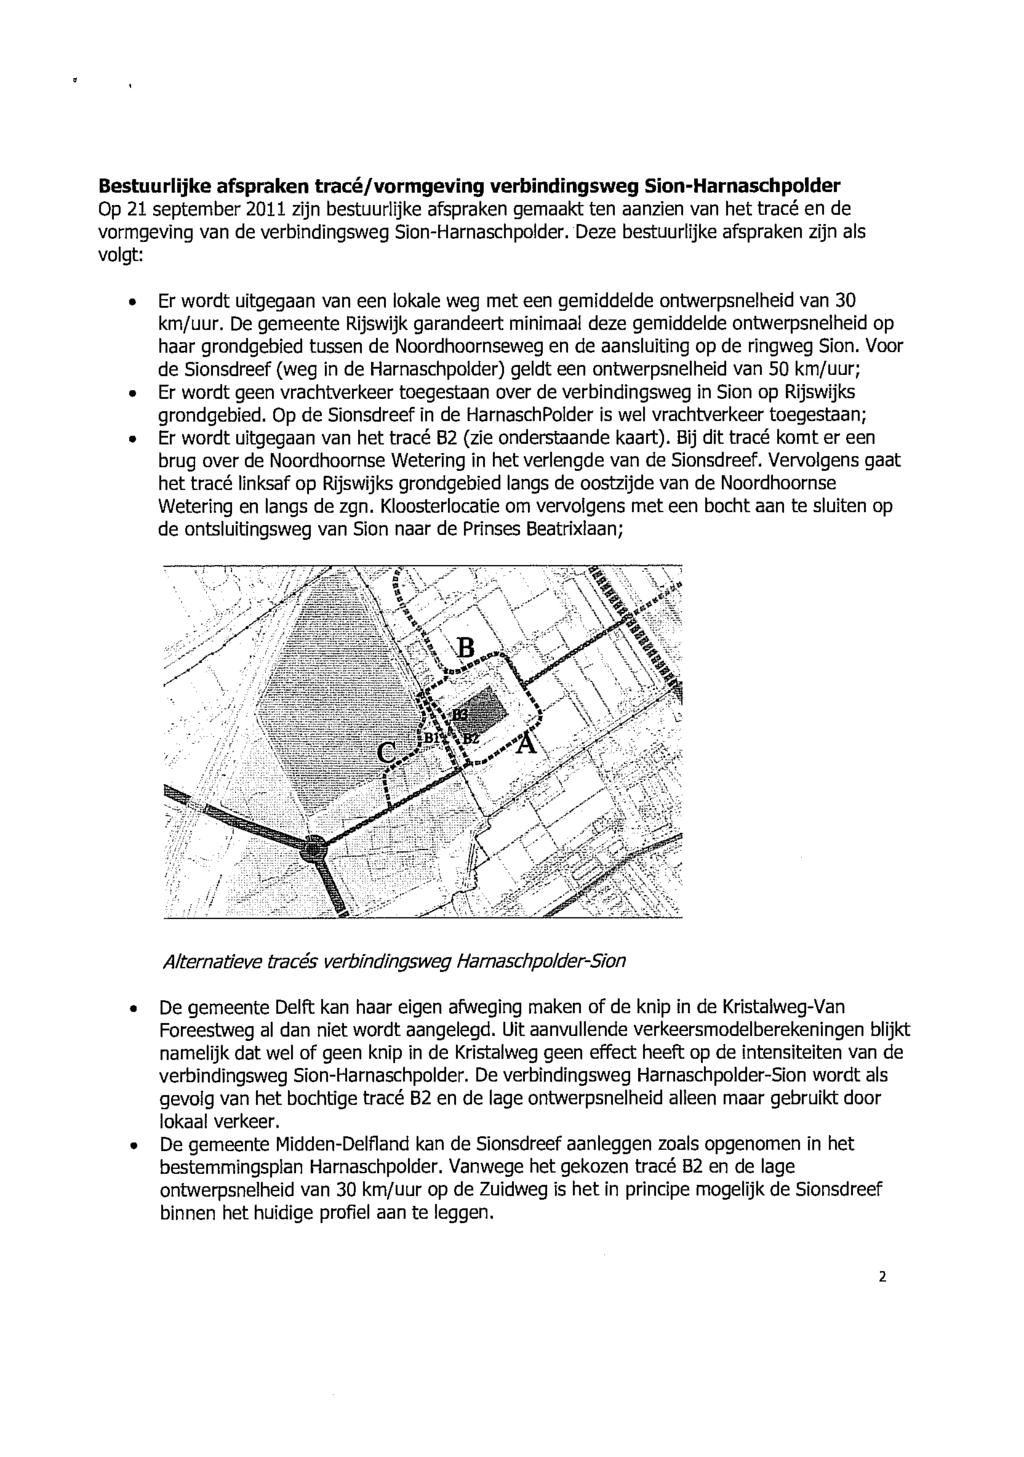 Bestuurlijke afspraken tracé/vormgeving verbindingsweg Sion-Harnaschpolder Op 21 september 2011 zijn bestuurlijke afspraken gemaakt ten aanzien van het tracé en de vormgeving van de verbindingsweg